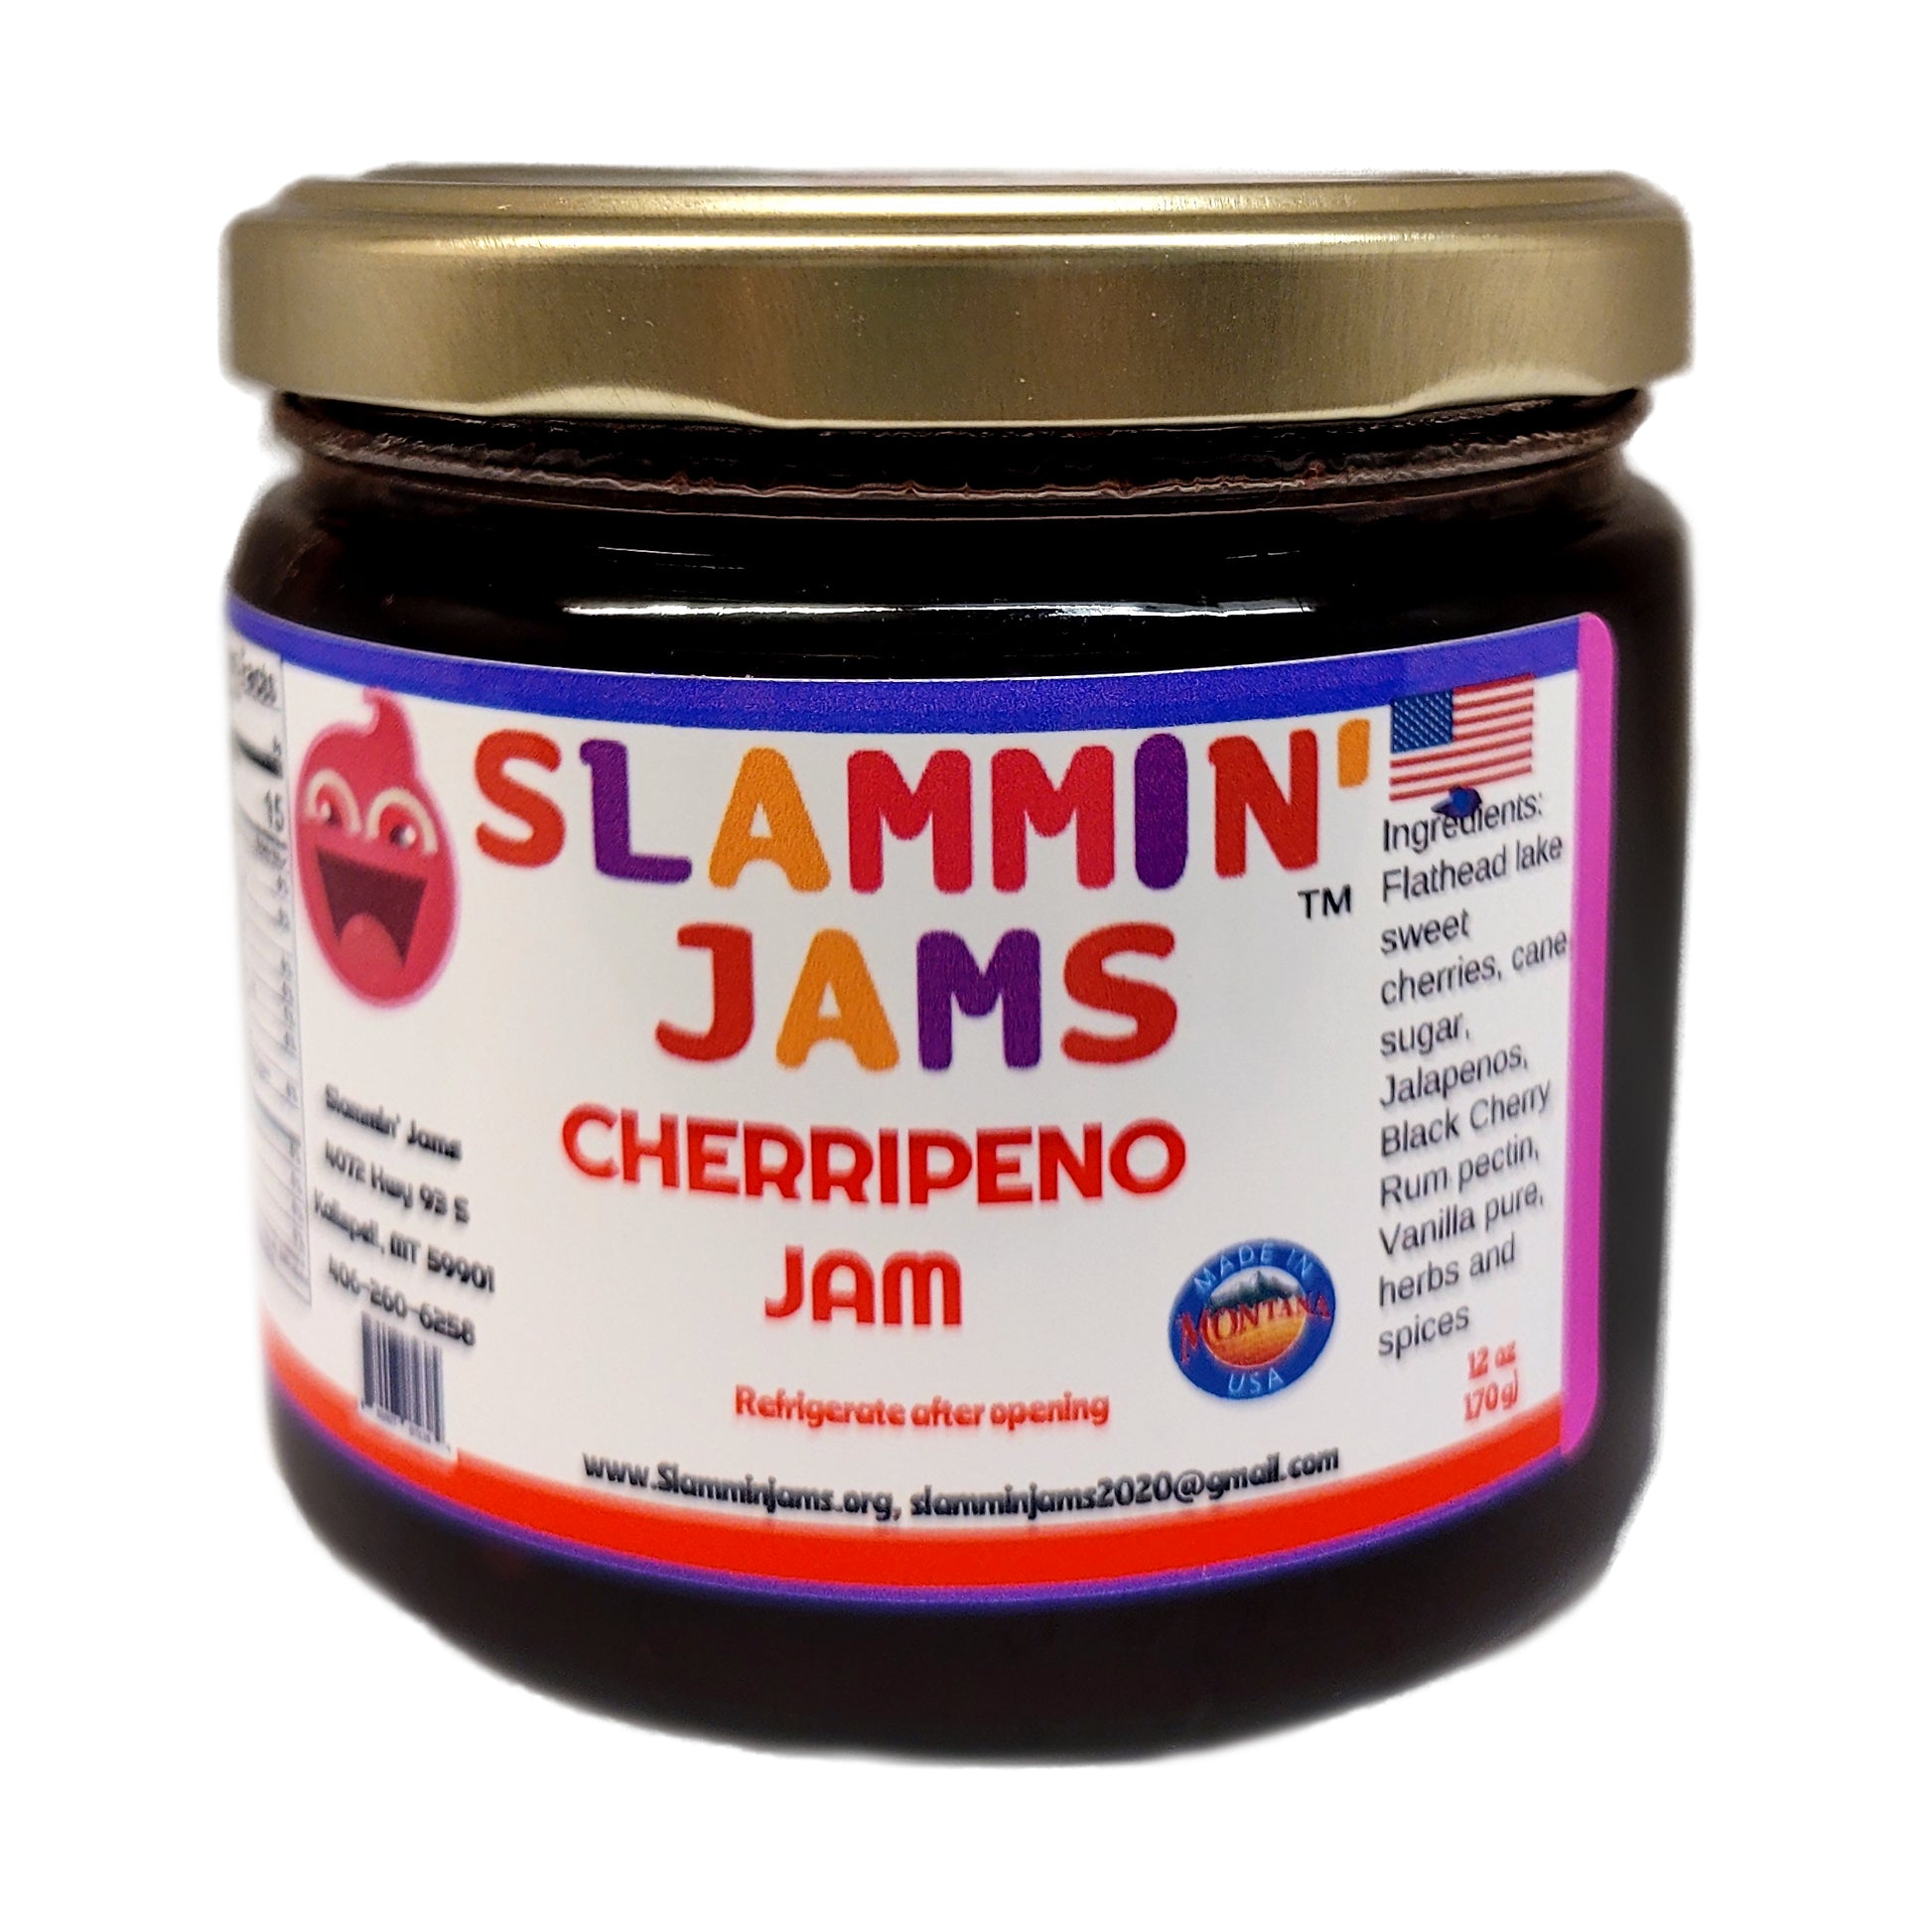 Cherripeno Jam - 12 oz  by Slammin' Jams